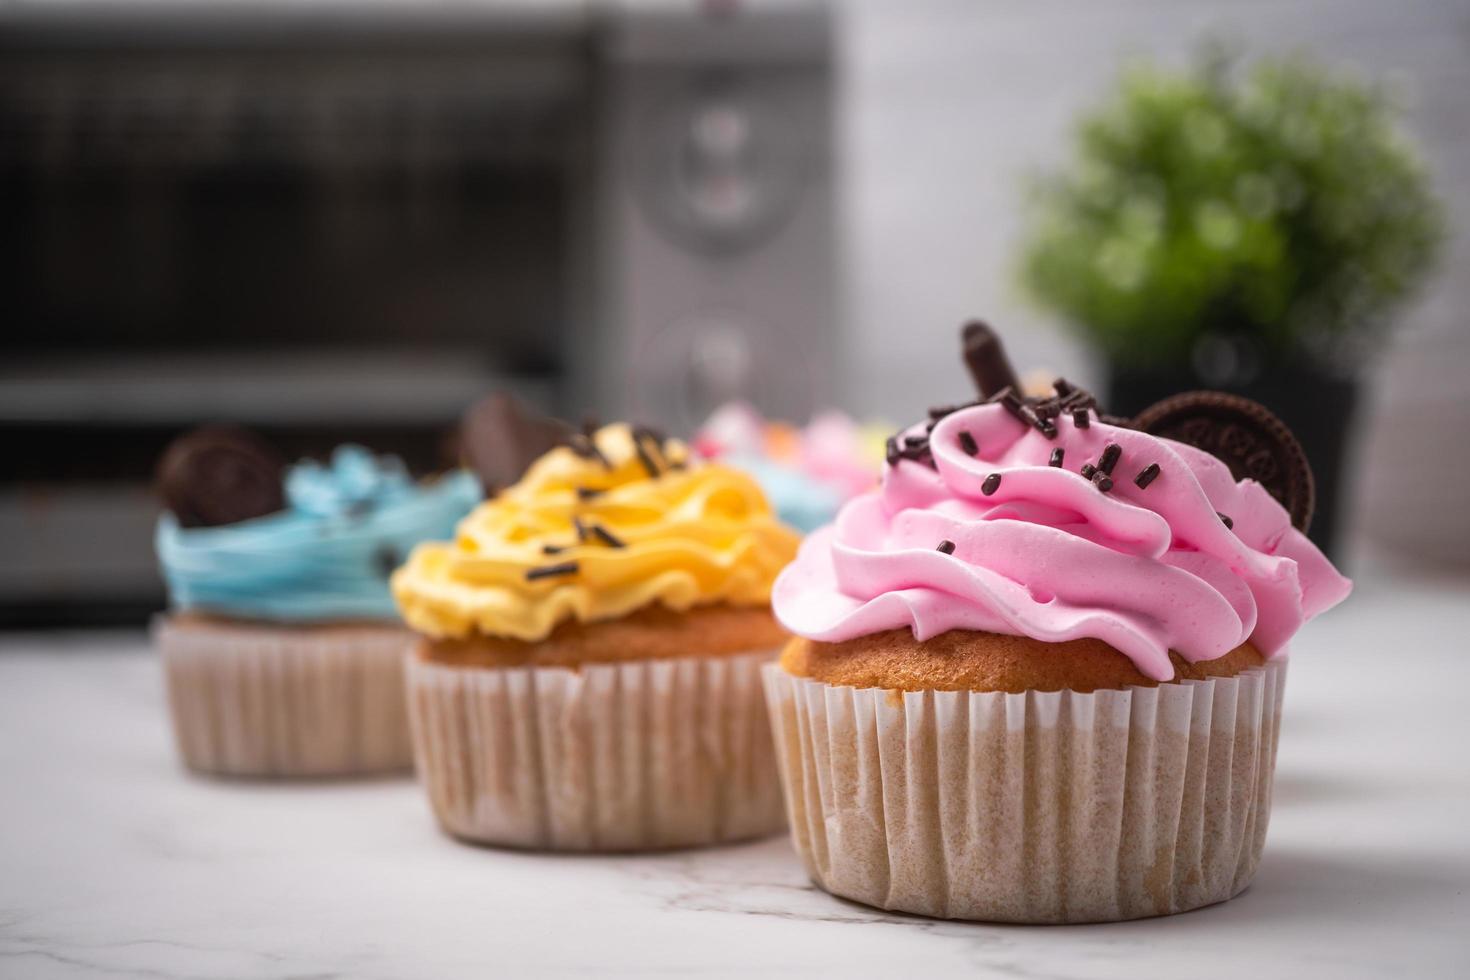 délicieux cupcakes faits maison avec crème colorée et garniture de bonbons et biscuits au chocolat. dessert de vacances d'automne fait maison photo